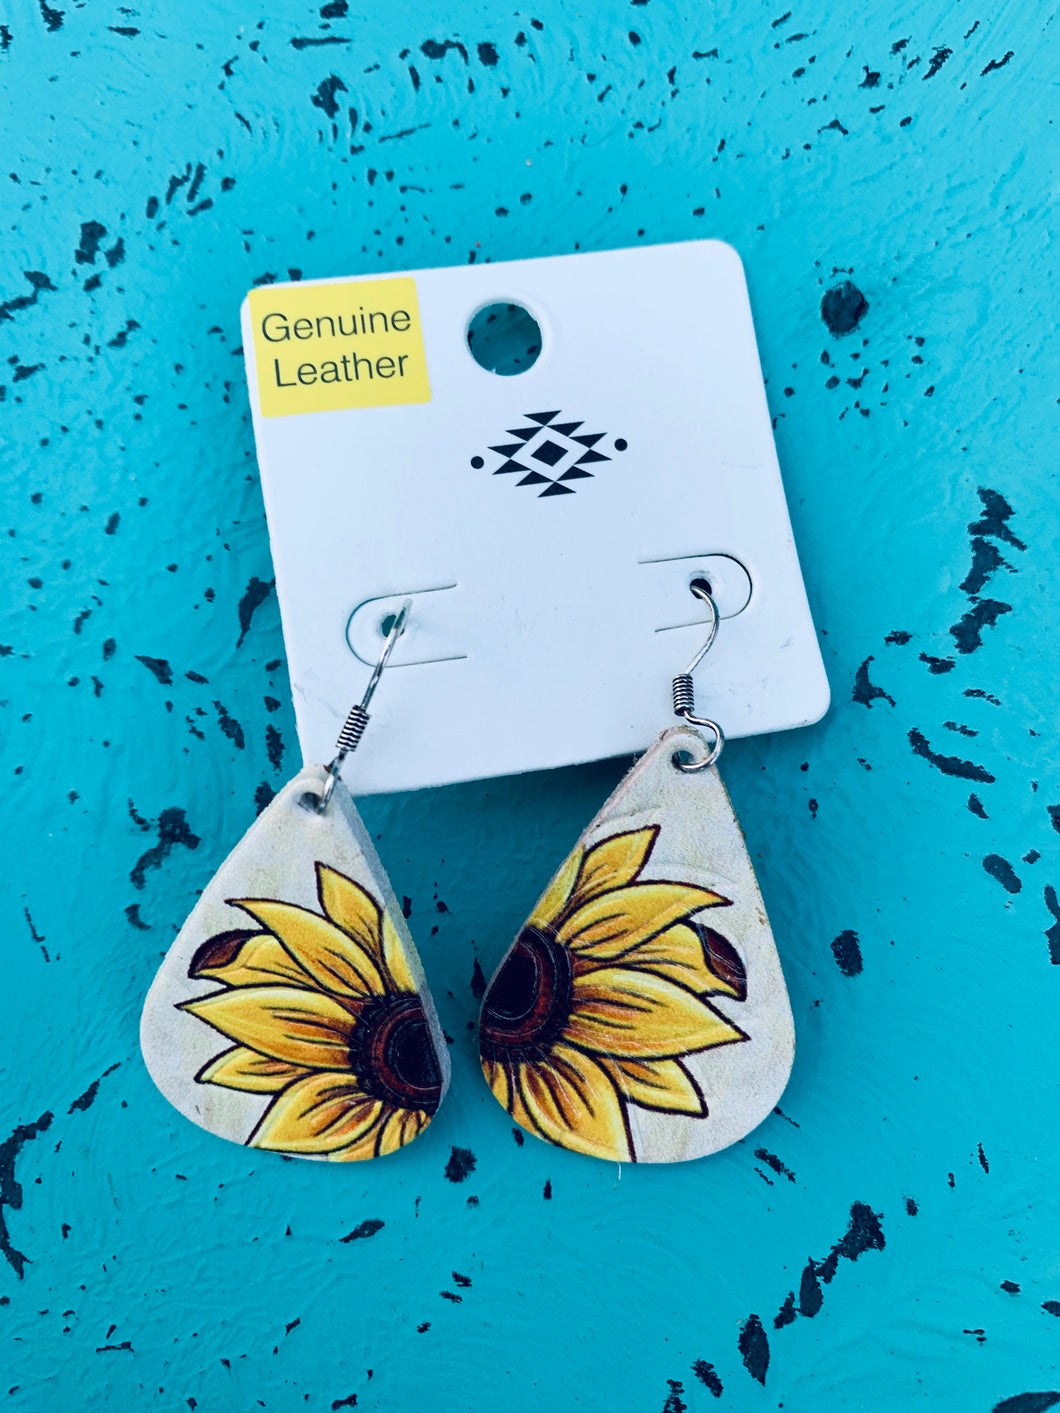 White leather sunflower earrings